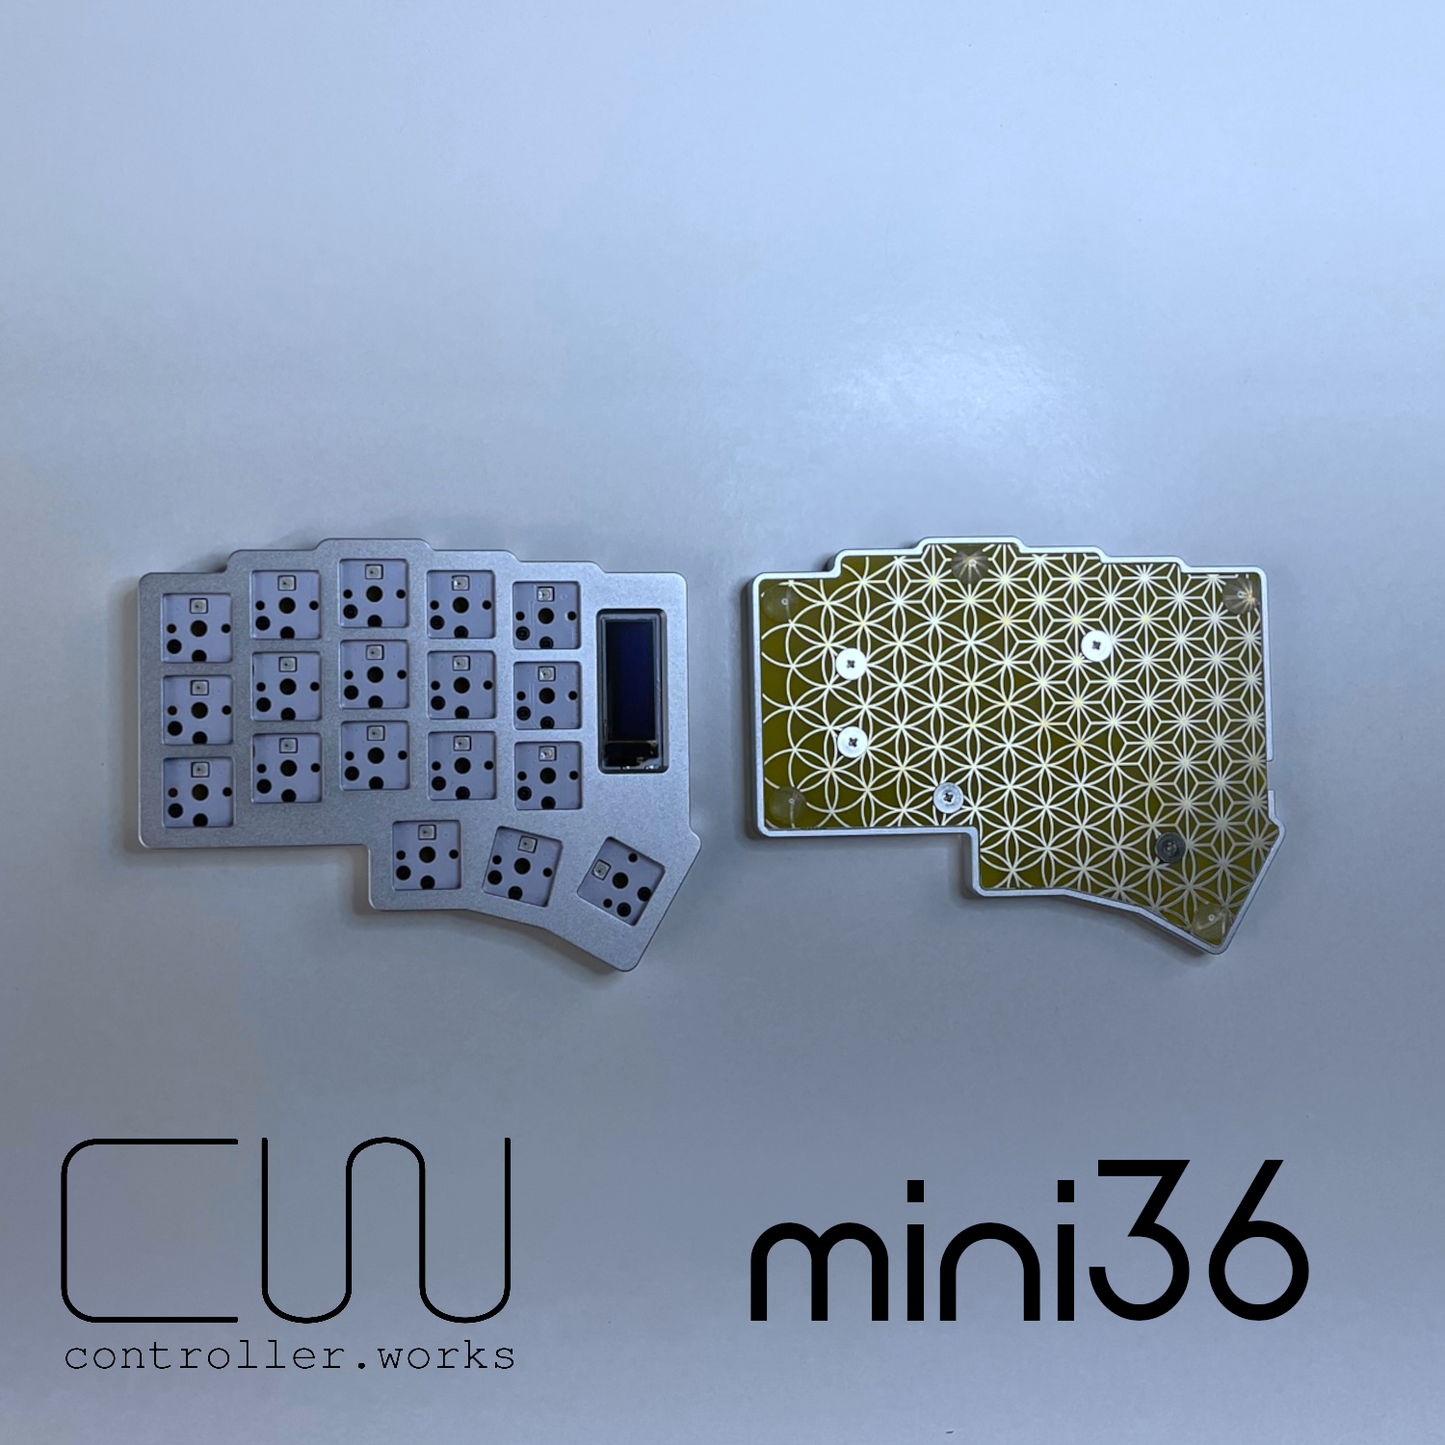 mini36 Low Profile Ergonomic Keyboard